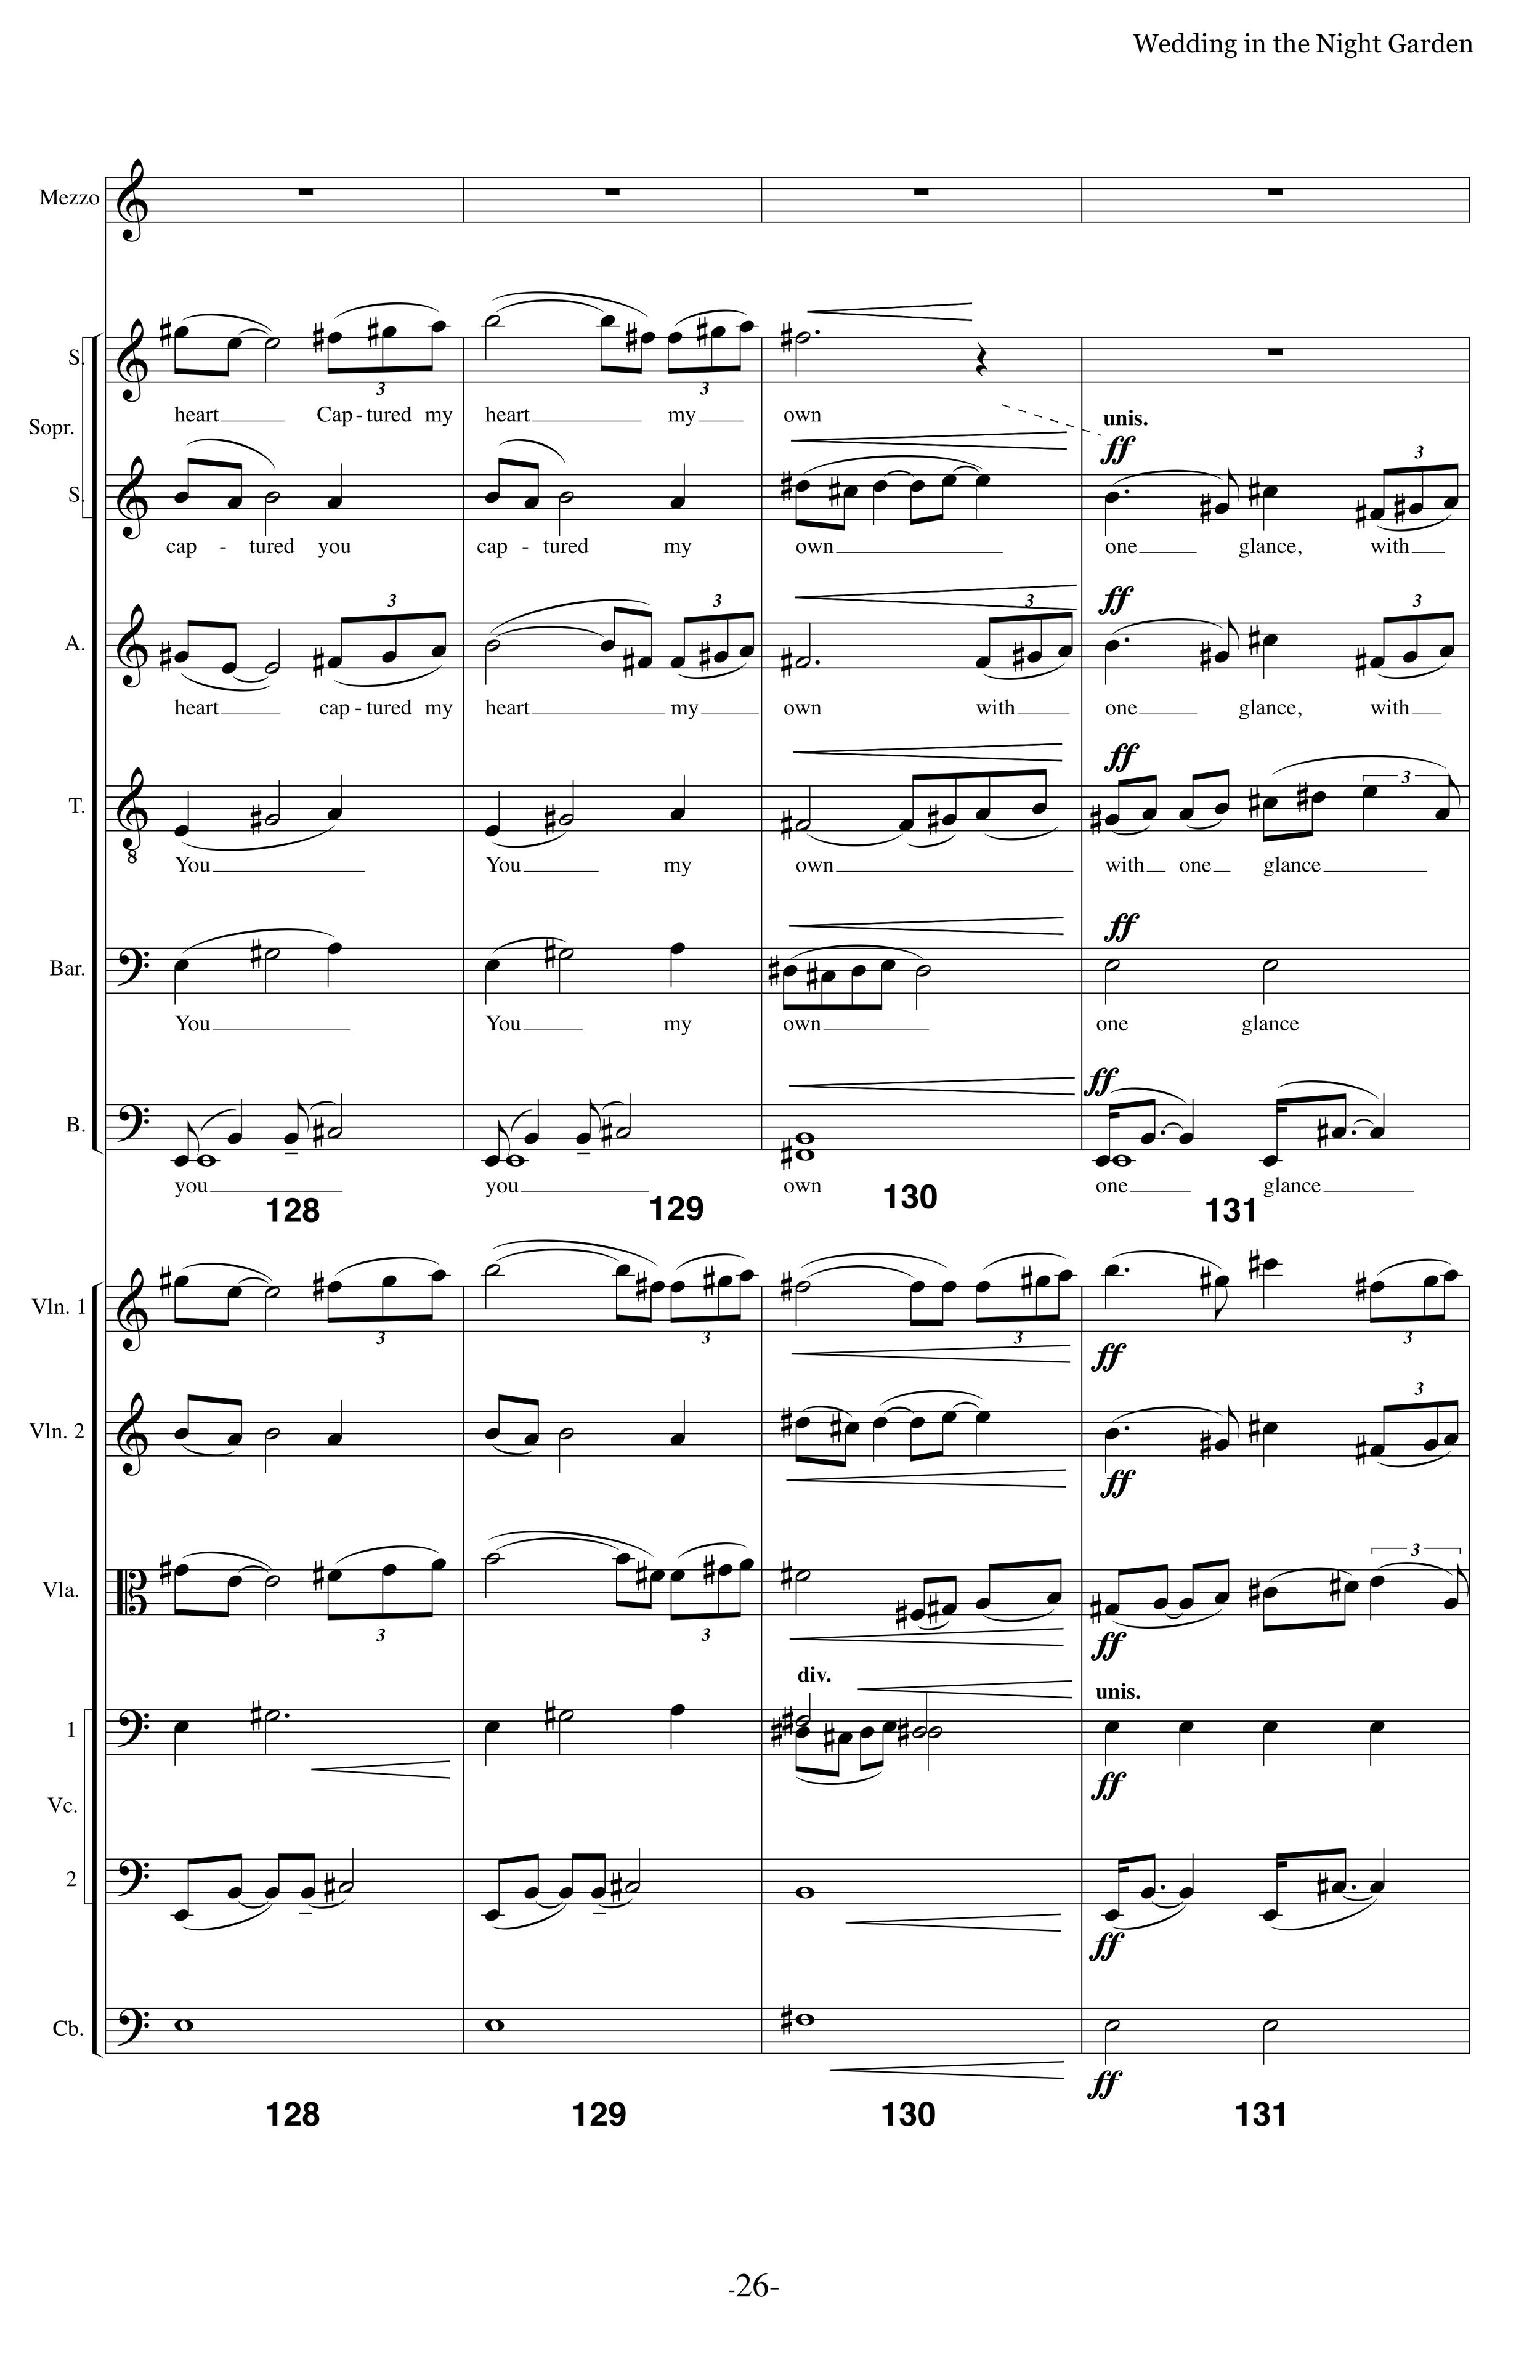 WITNG_MS Strings Choir p26.jpg